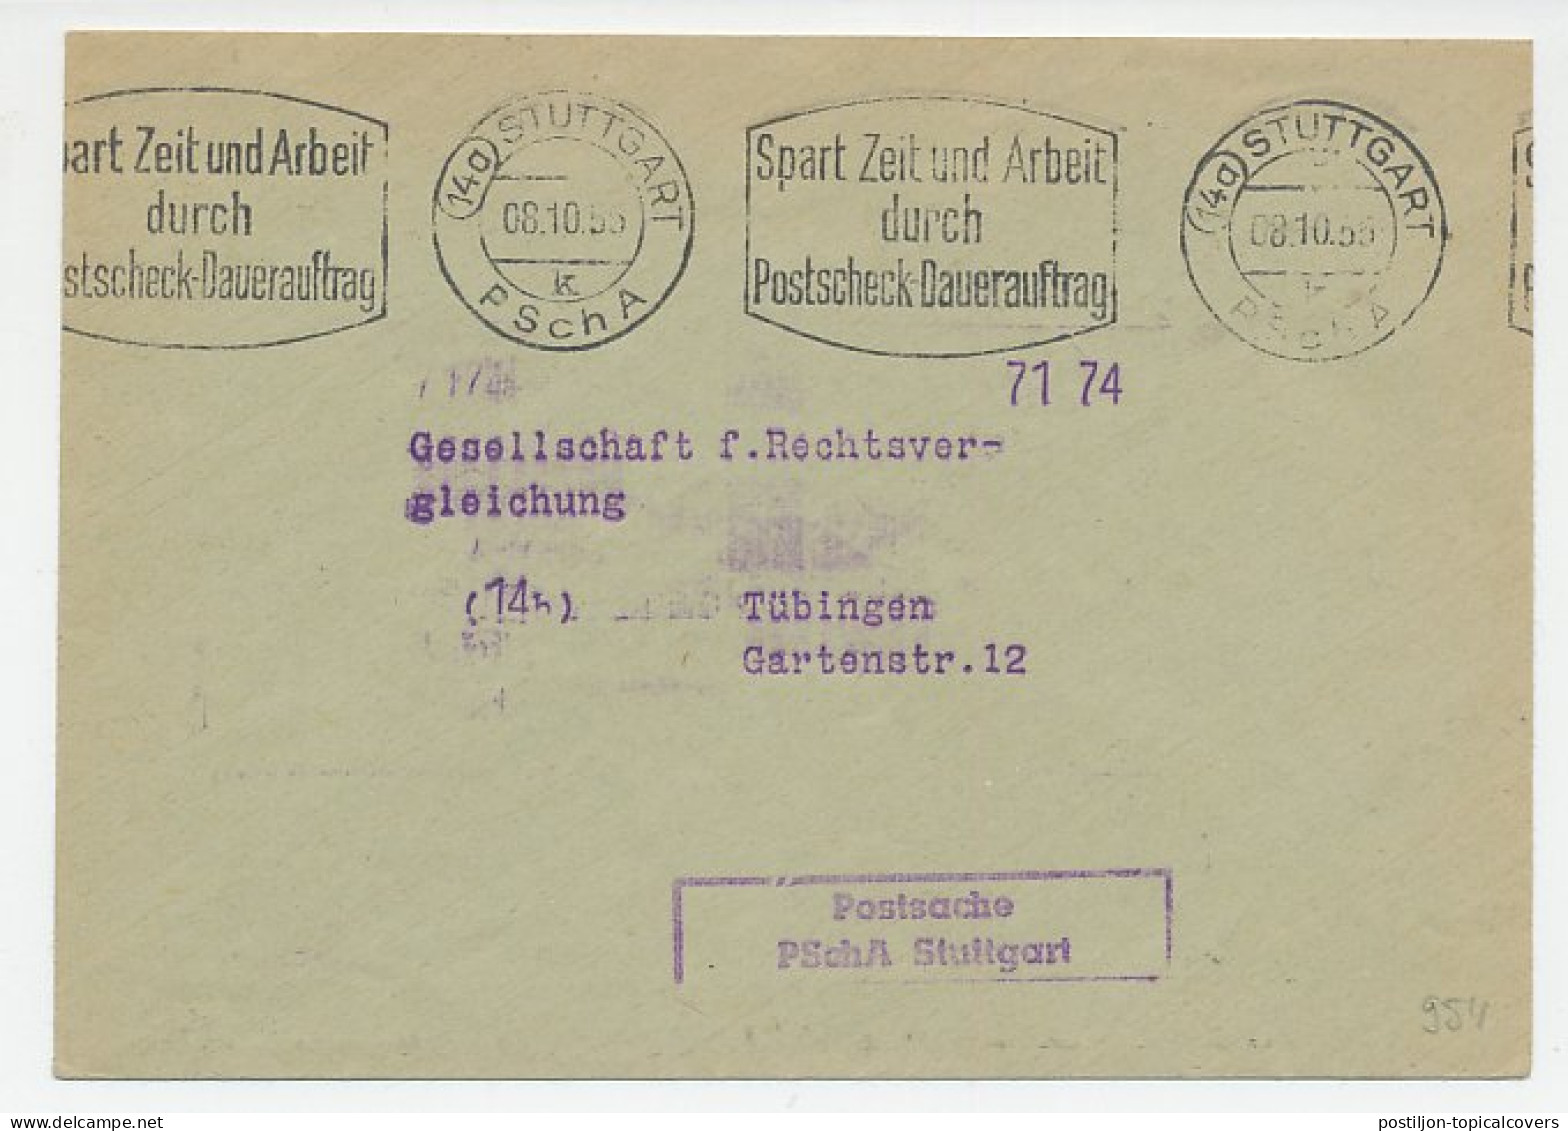 Postal Cheque Cover Germany 1955 Watch - Clock - Elastofixo - Fixoflex - Relojería